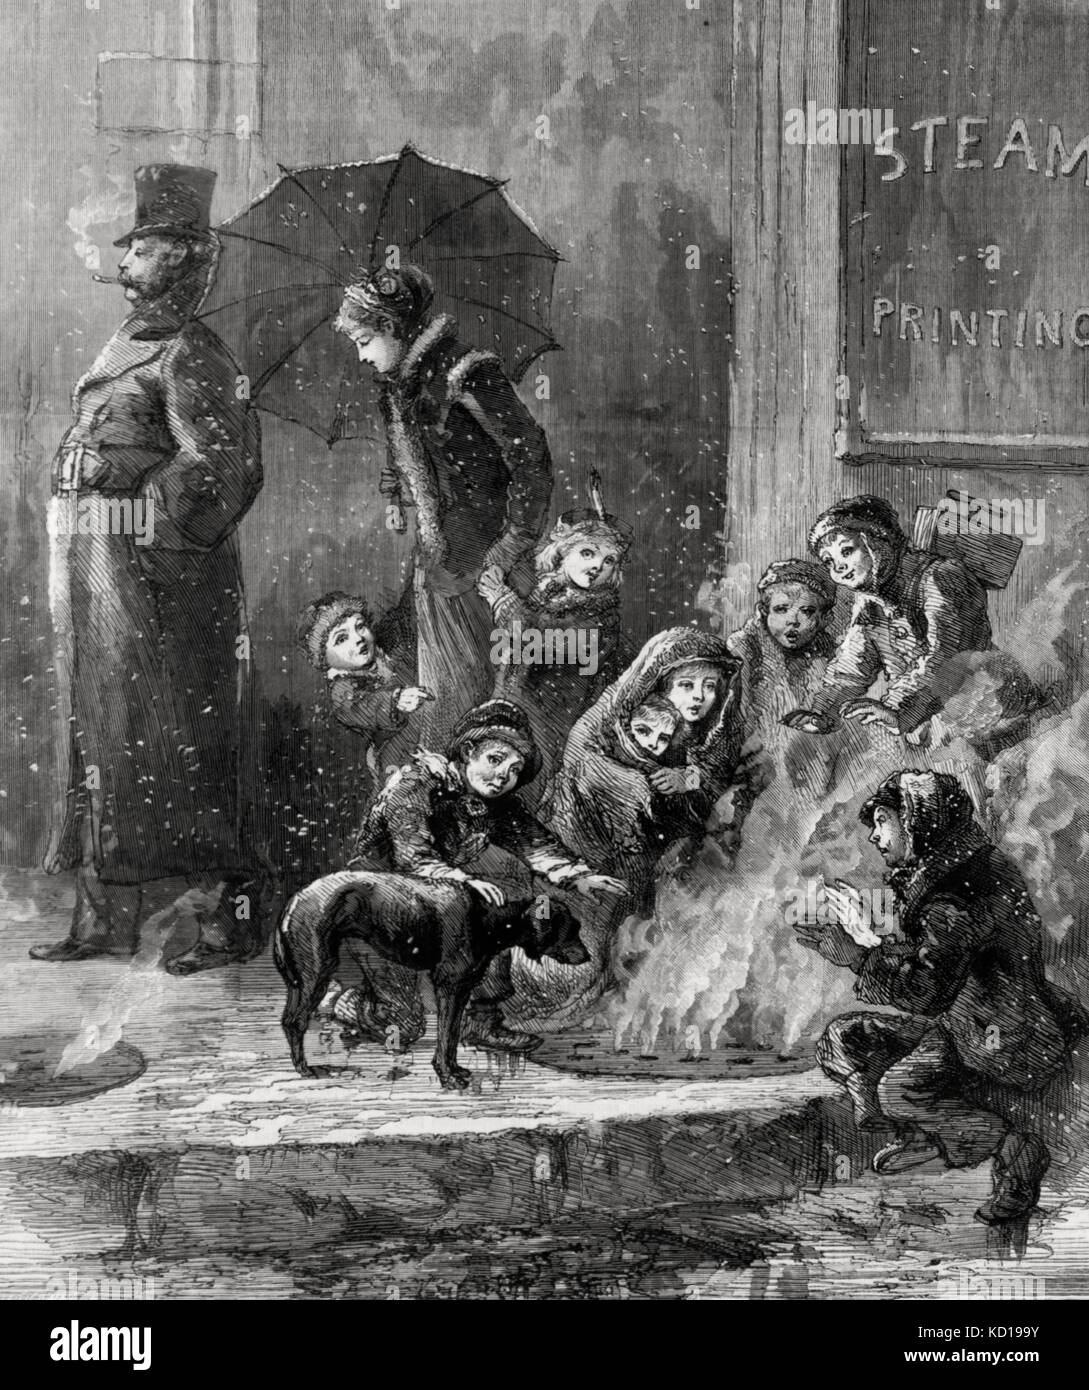 Die Feuerstelle aus Stein der Armen - Abfälle Dampf nicht verschwendet - Obdachlose Menschen selbst Heizung mit Dampf stieg von Gitter in Pflaster, während eine uneigennützige wohlhabende Familie Spaziergänge durch. 1876 Stockfoto